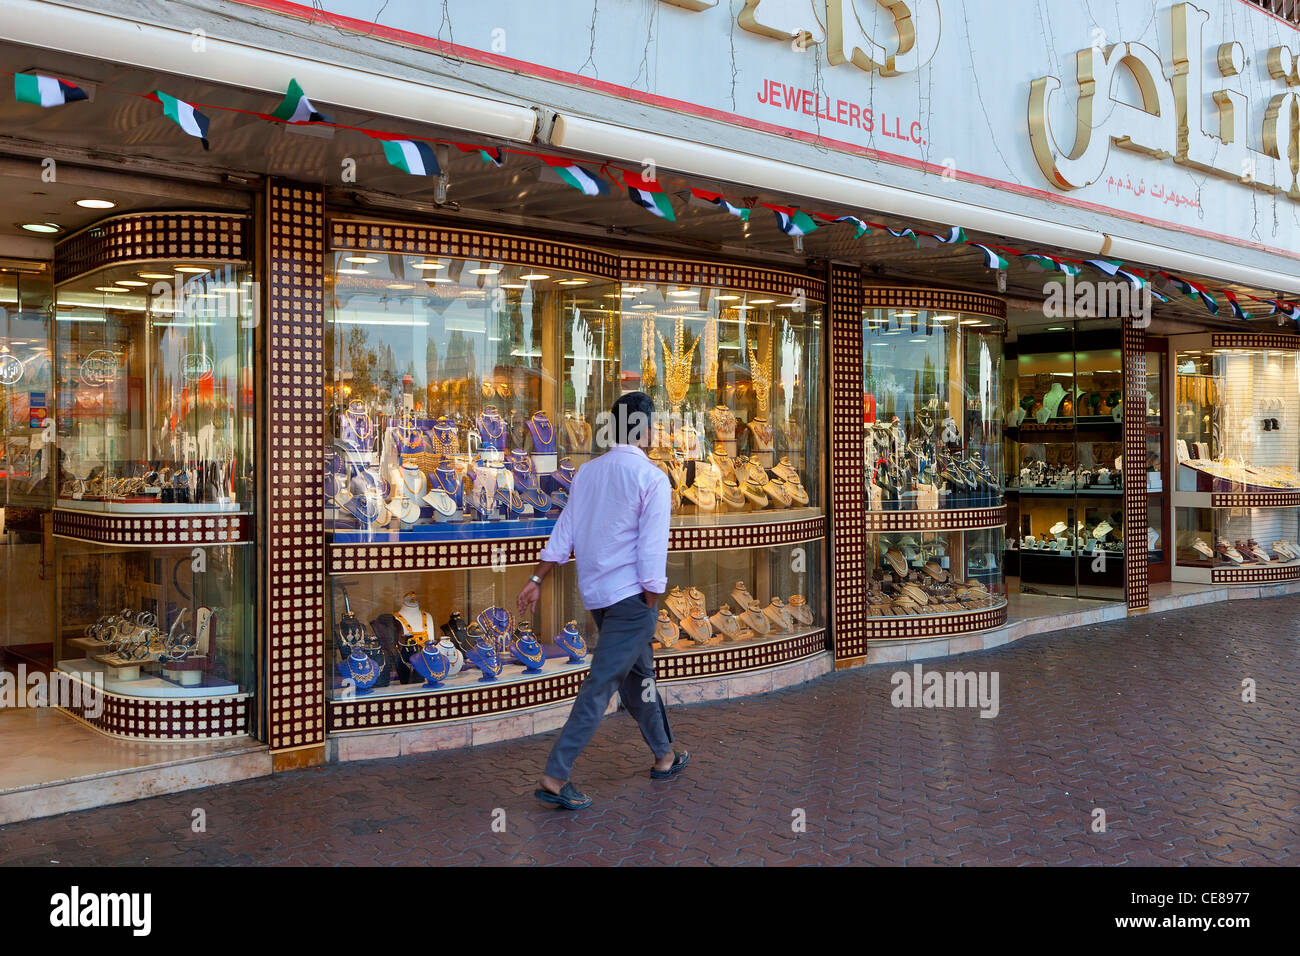 L'Asie, Arabie, Dubai Deira, Dubaï, l'émirat, magasin de bijoux en or de Dubaï Banque D'Images